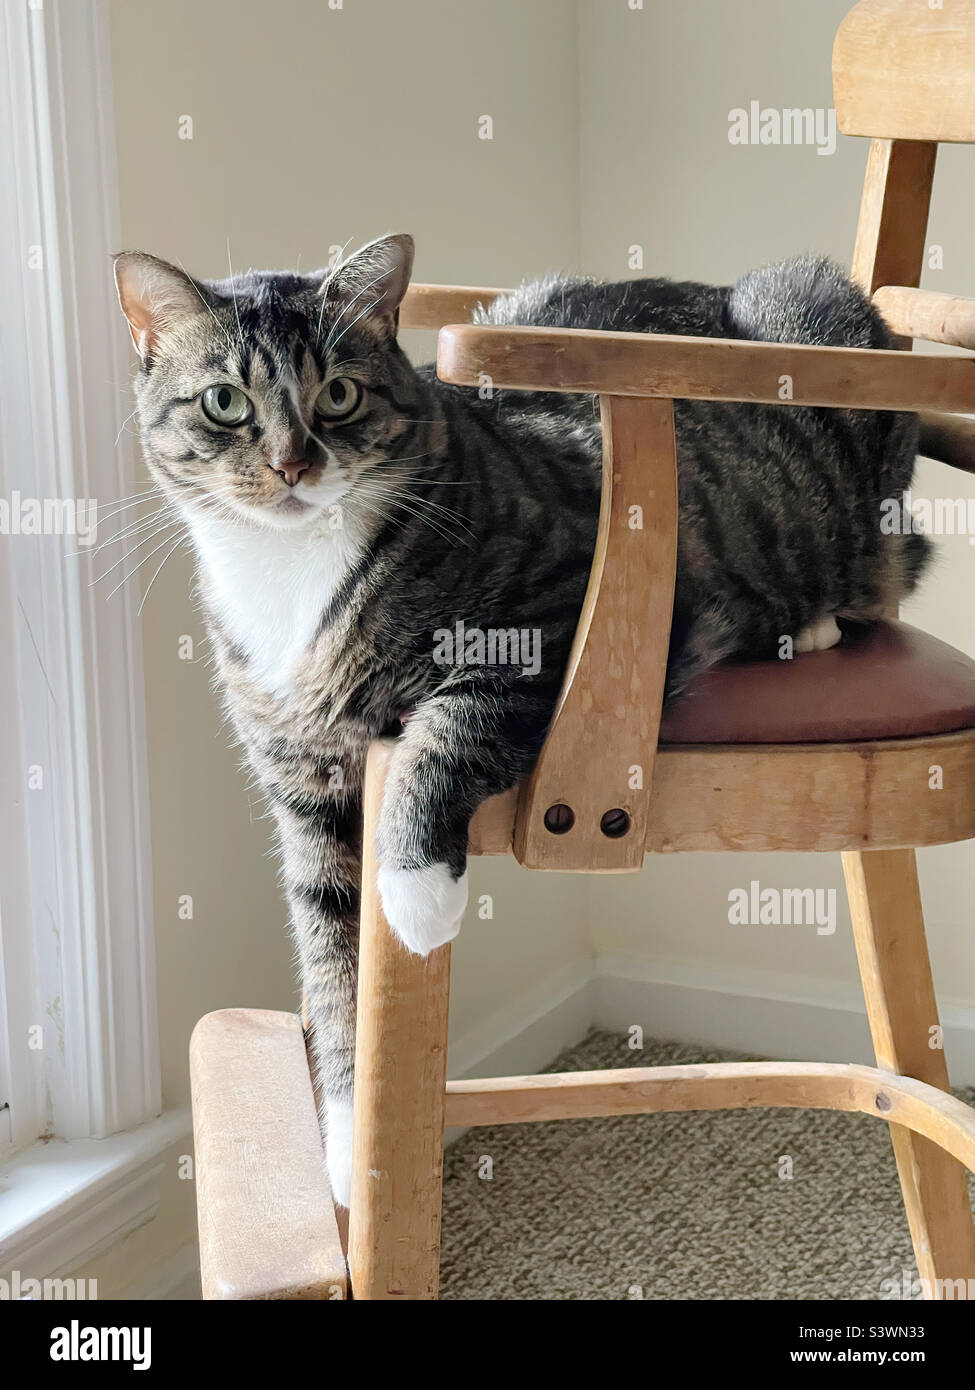 Gato doméstico de pelo corto descansando en una silla antigua. Foto de stock